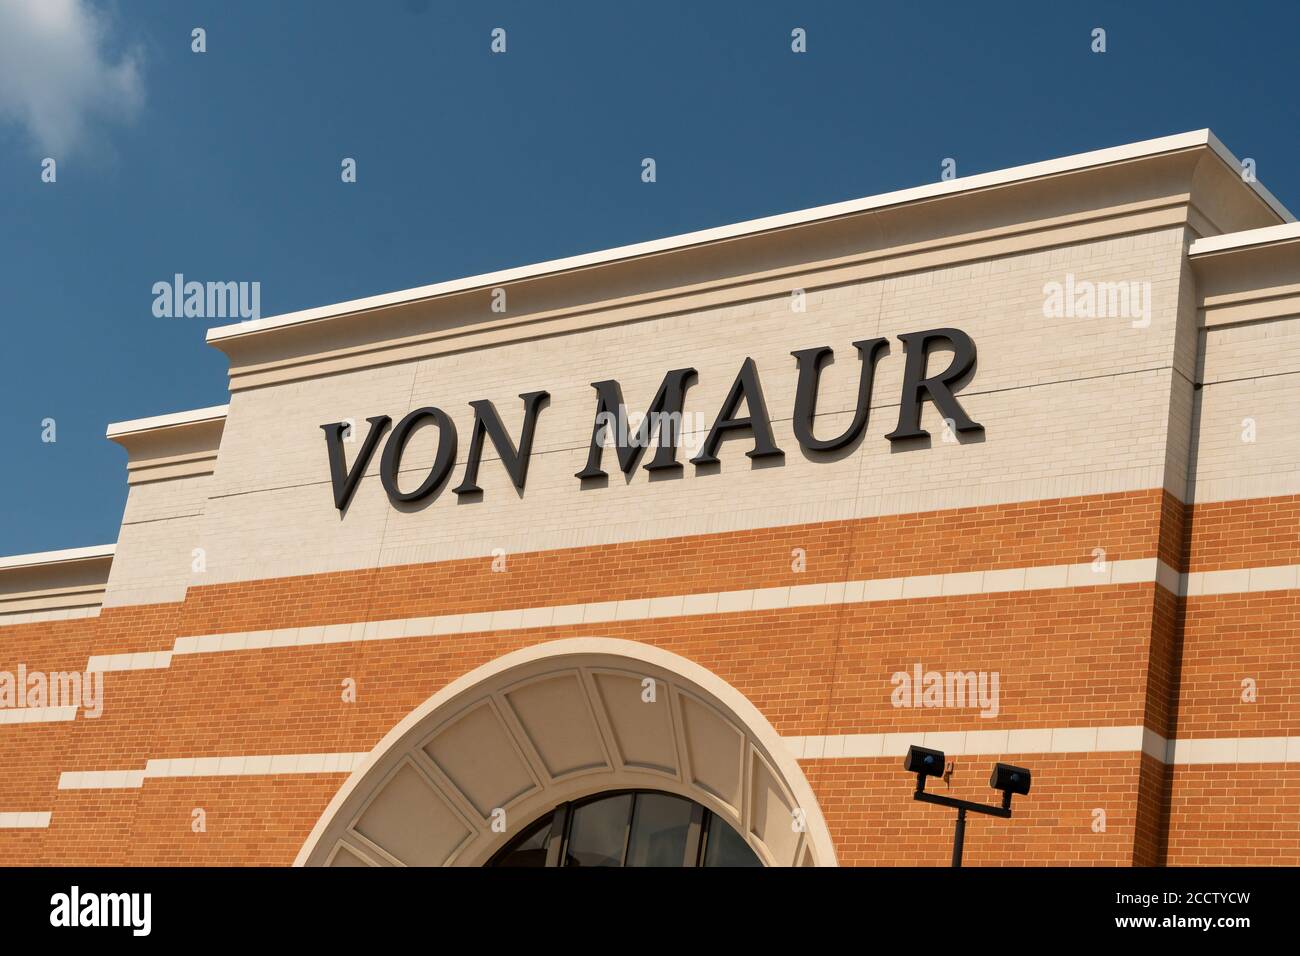 ROSEVILLE, MN/USA - AUGUST 23, 2020: Von Maur retail department